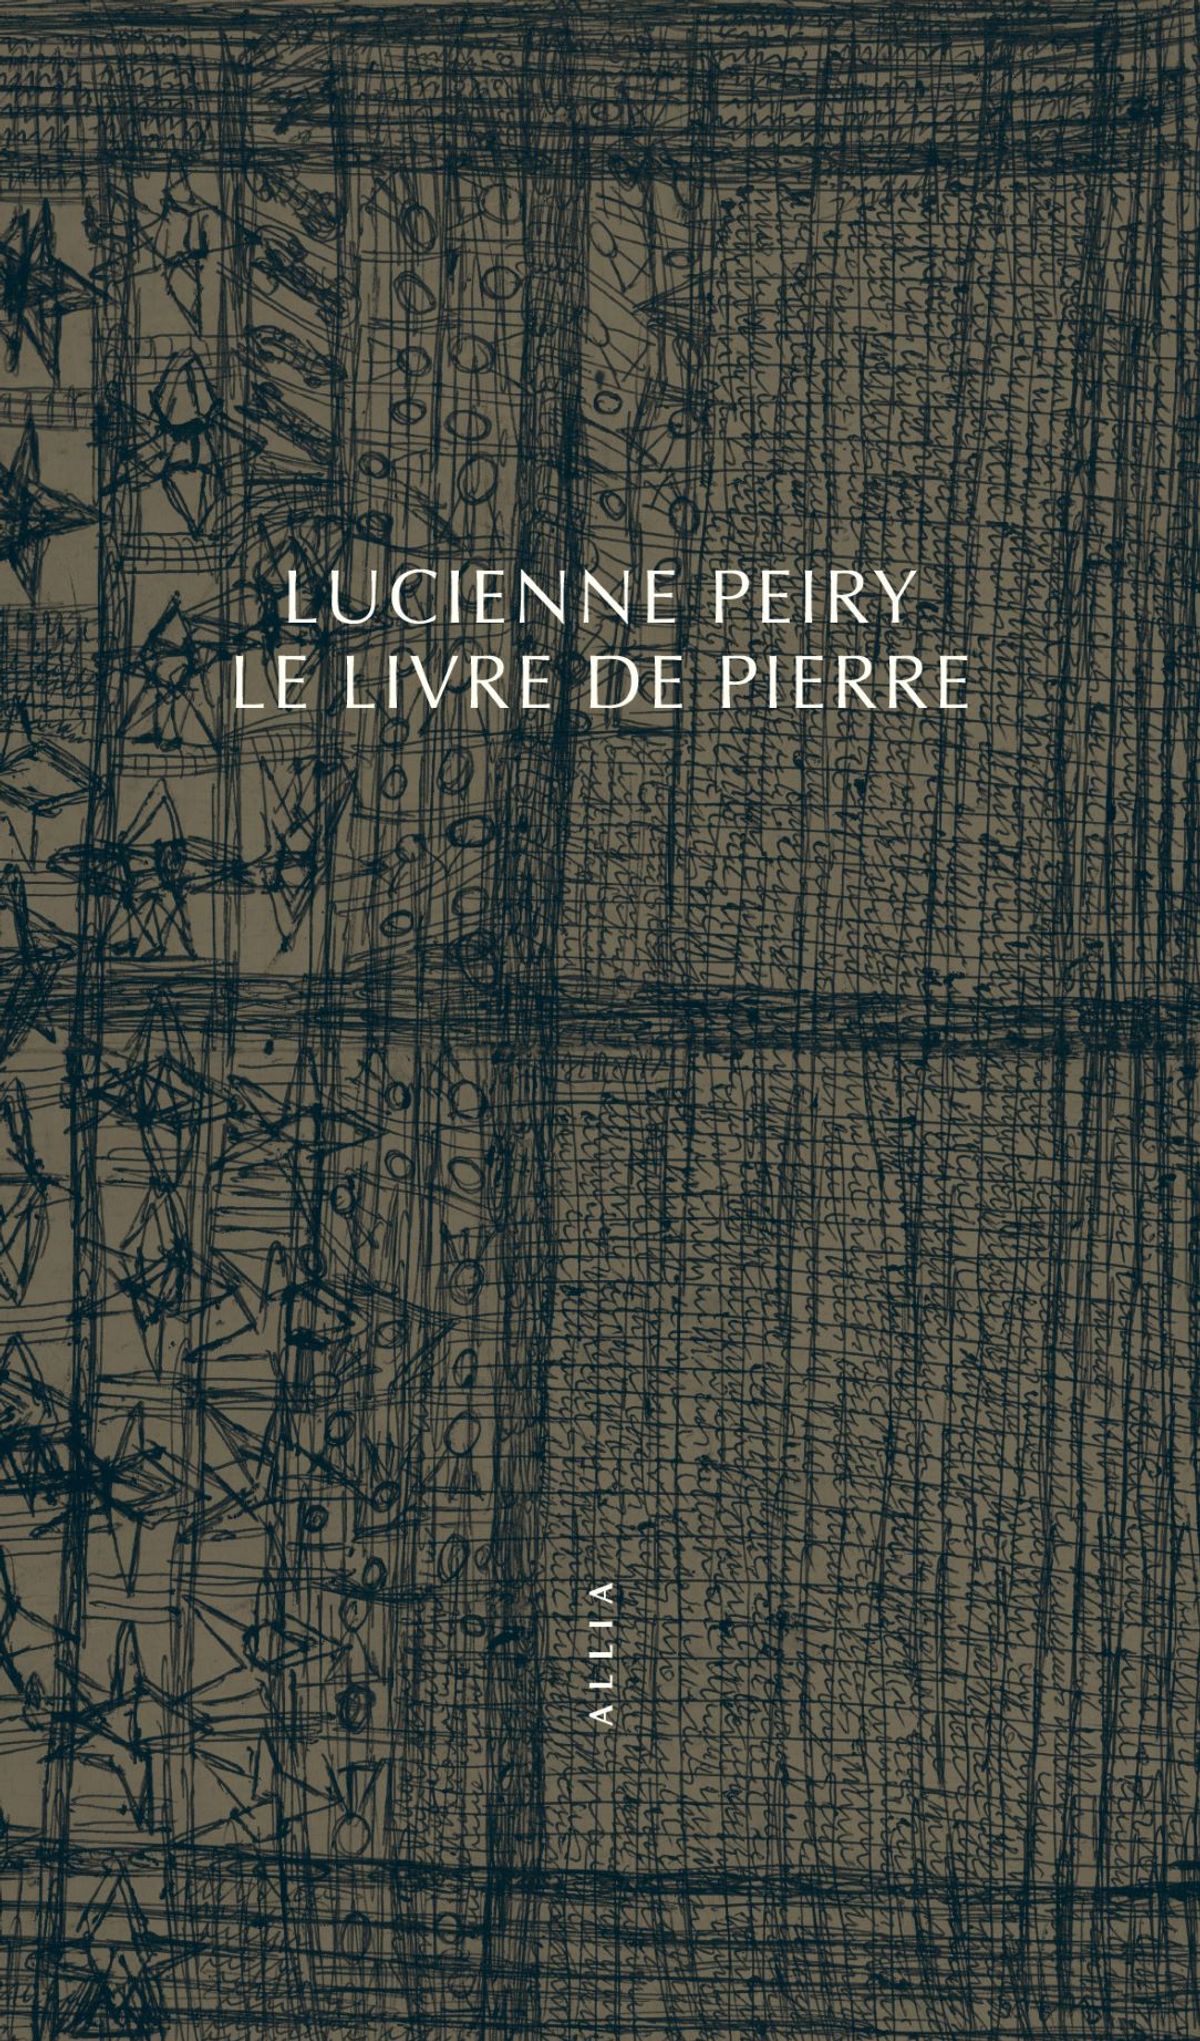 Lucienne Peiry, "Le Livre de pierre", Paris, Allia, 2020, 80 pages, 7 euros. 